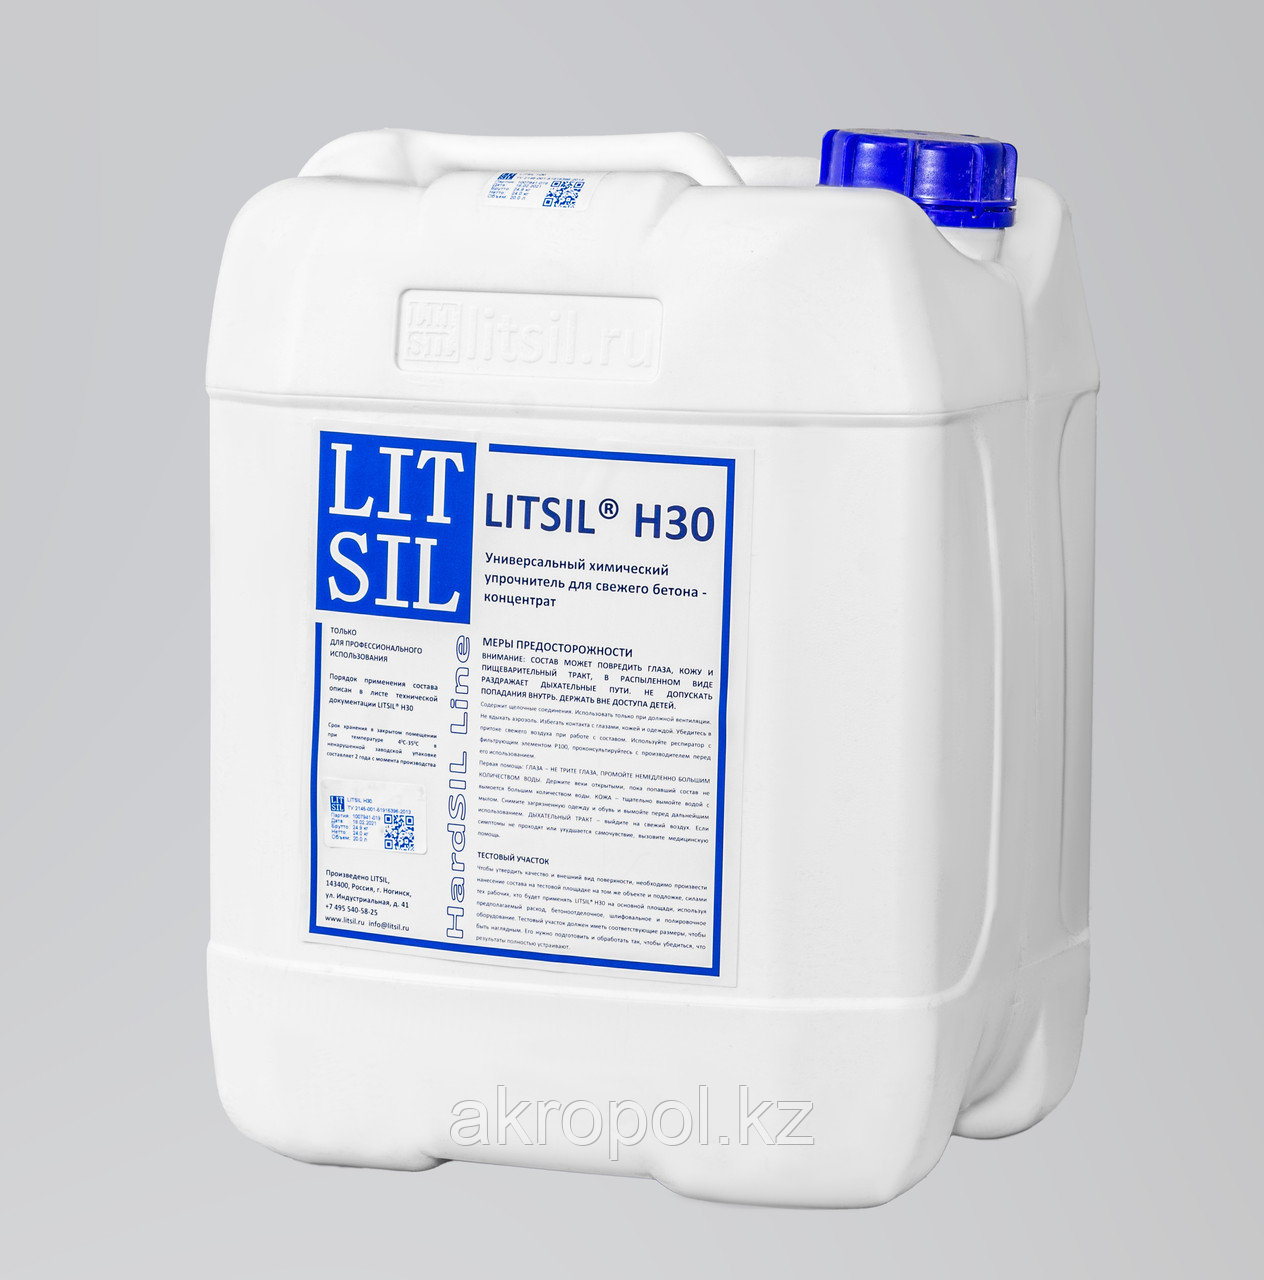 Универсальный химический упрочнитель для свежего бетона Litsil H30, концентрат